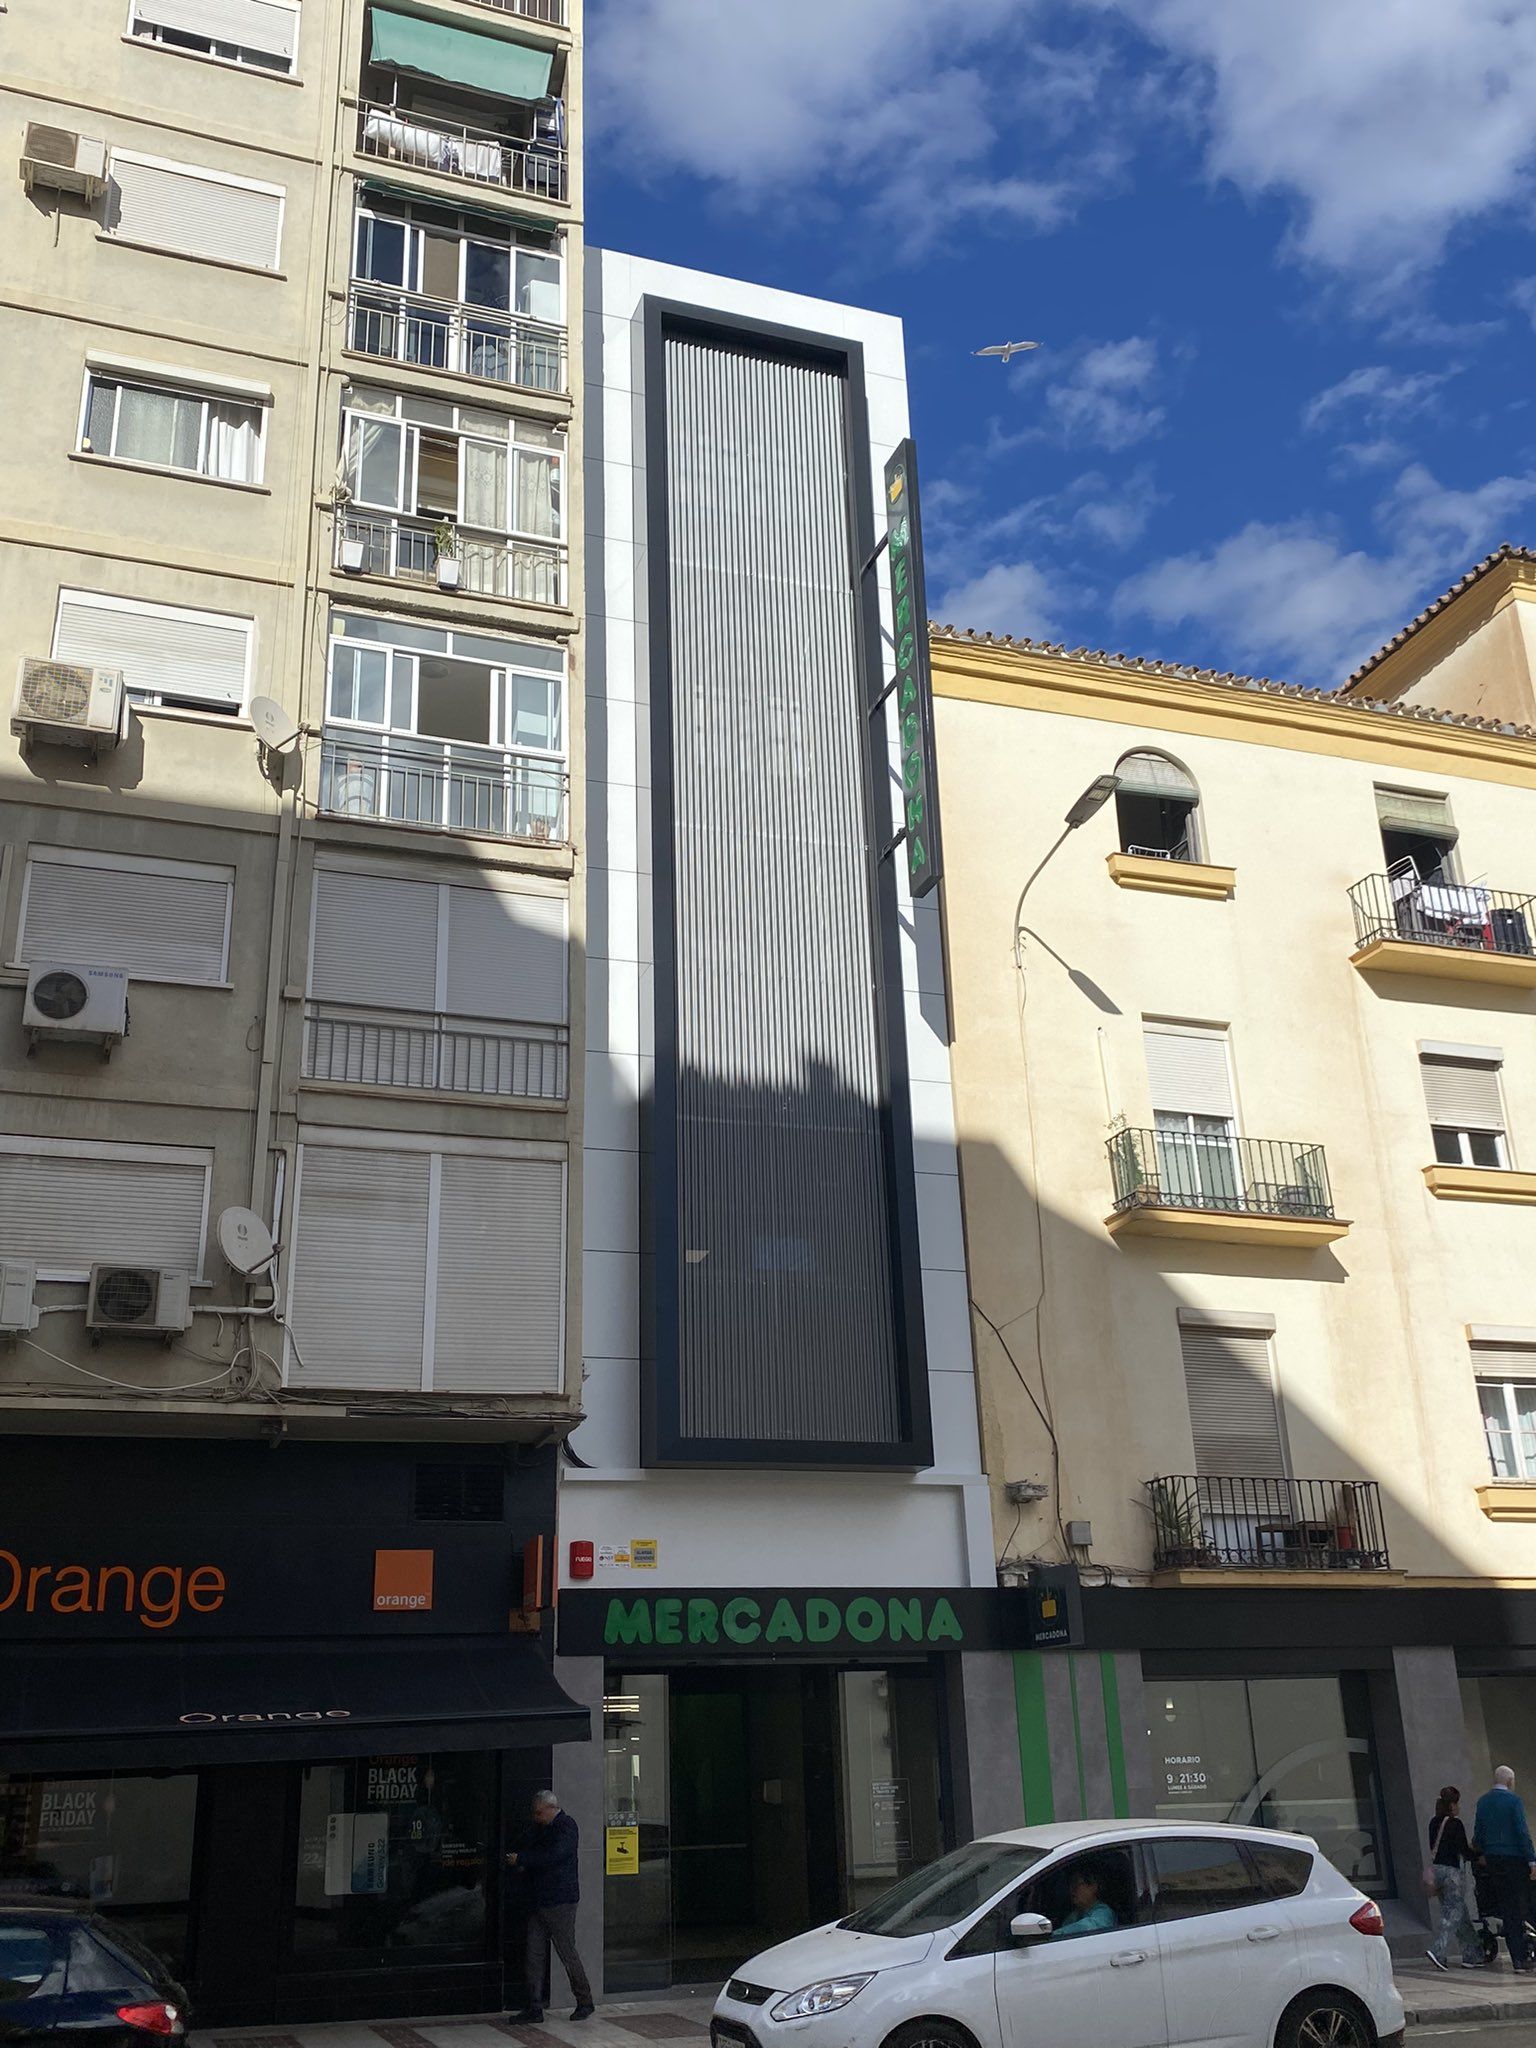 La peculiar fachada de un Mercadona en Málaga se hace viral: "¿Esto es real?". Foto: Twitter